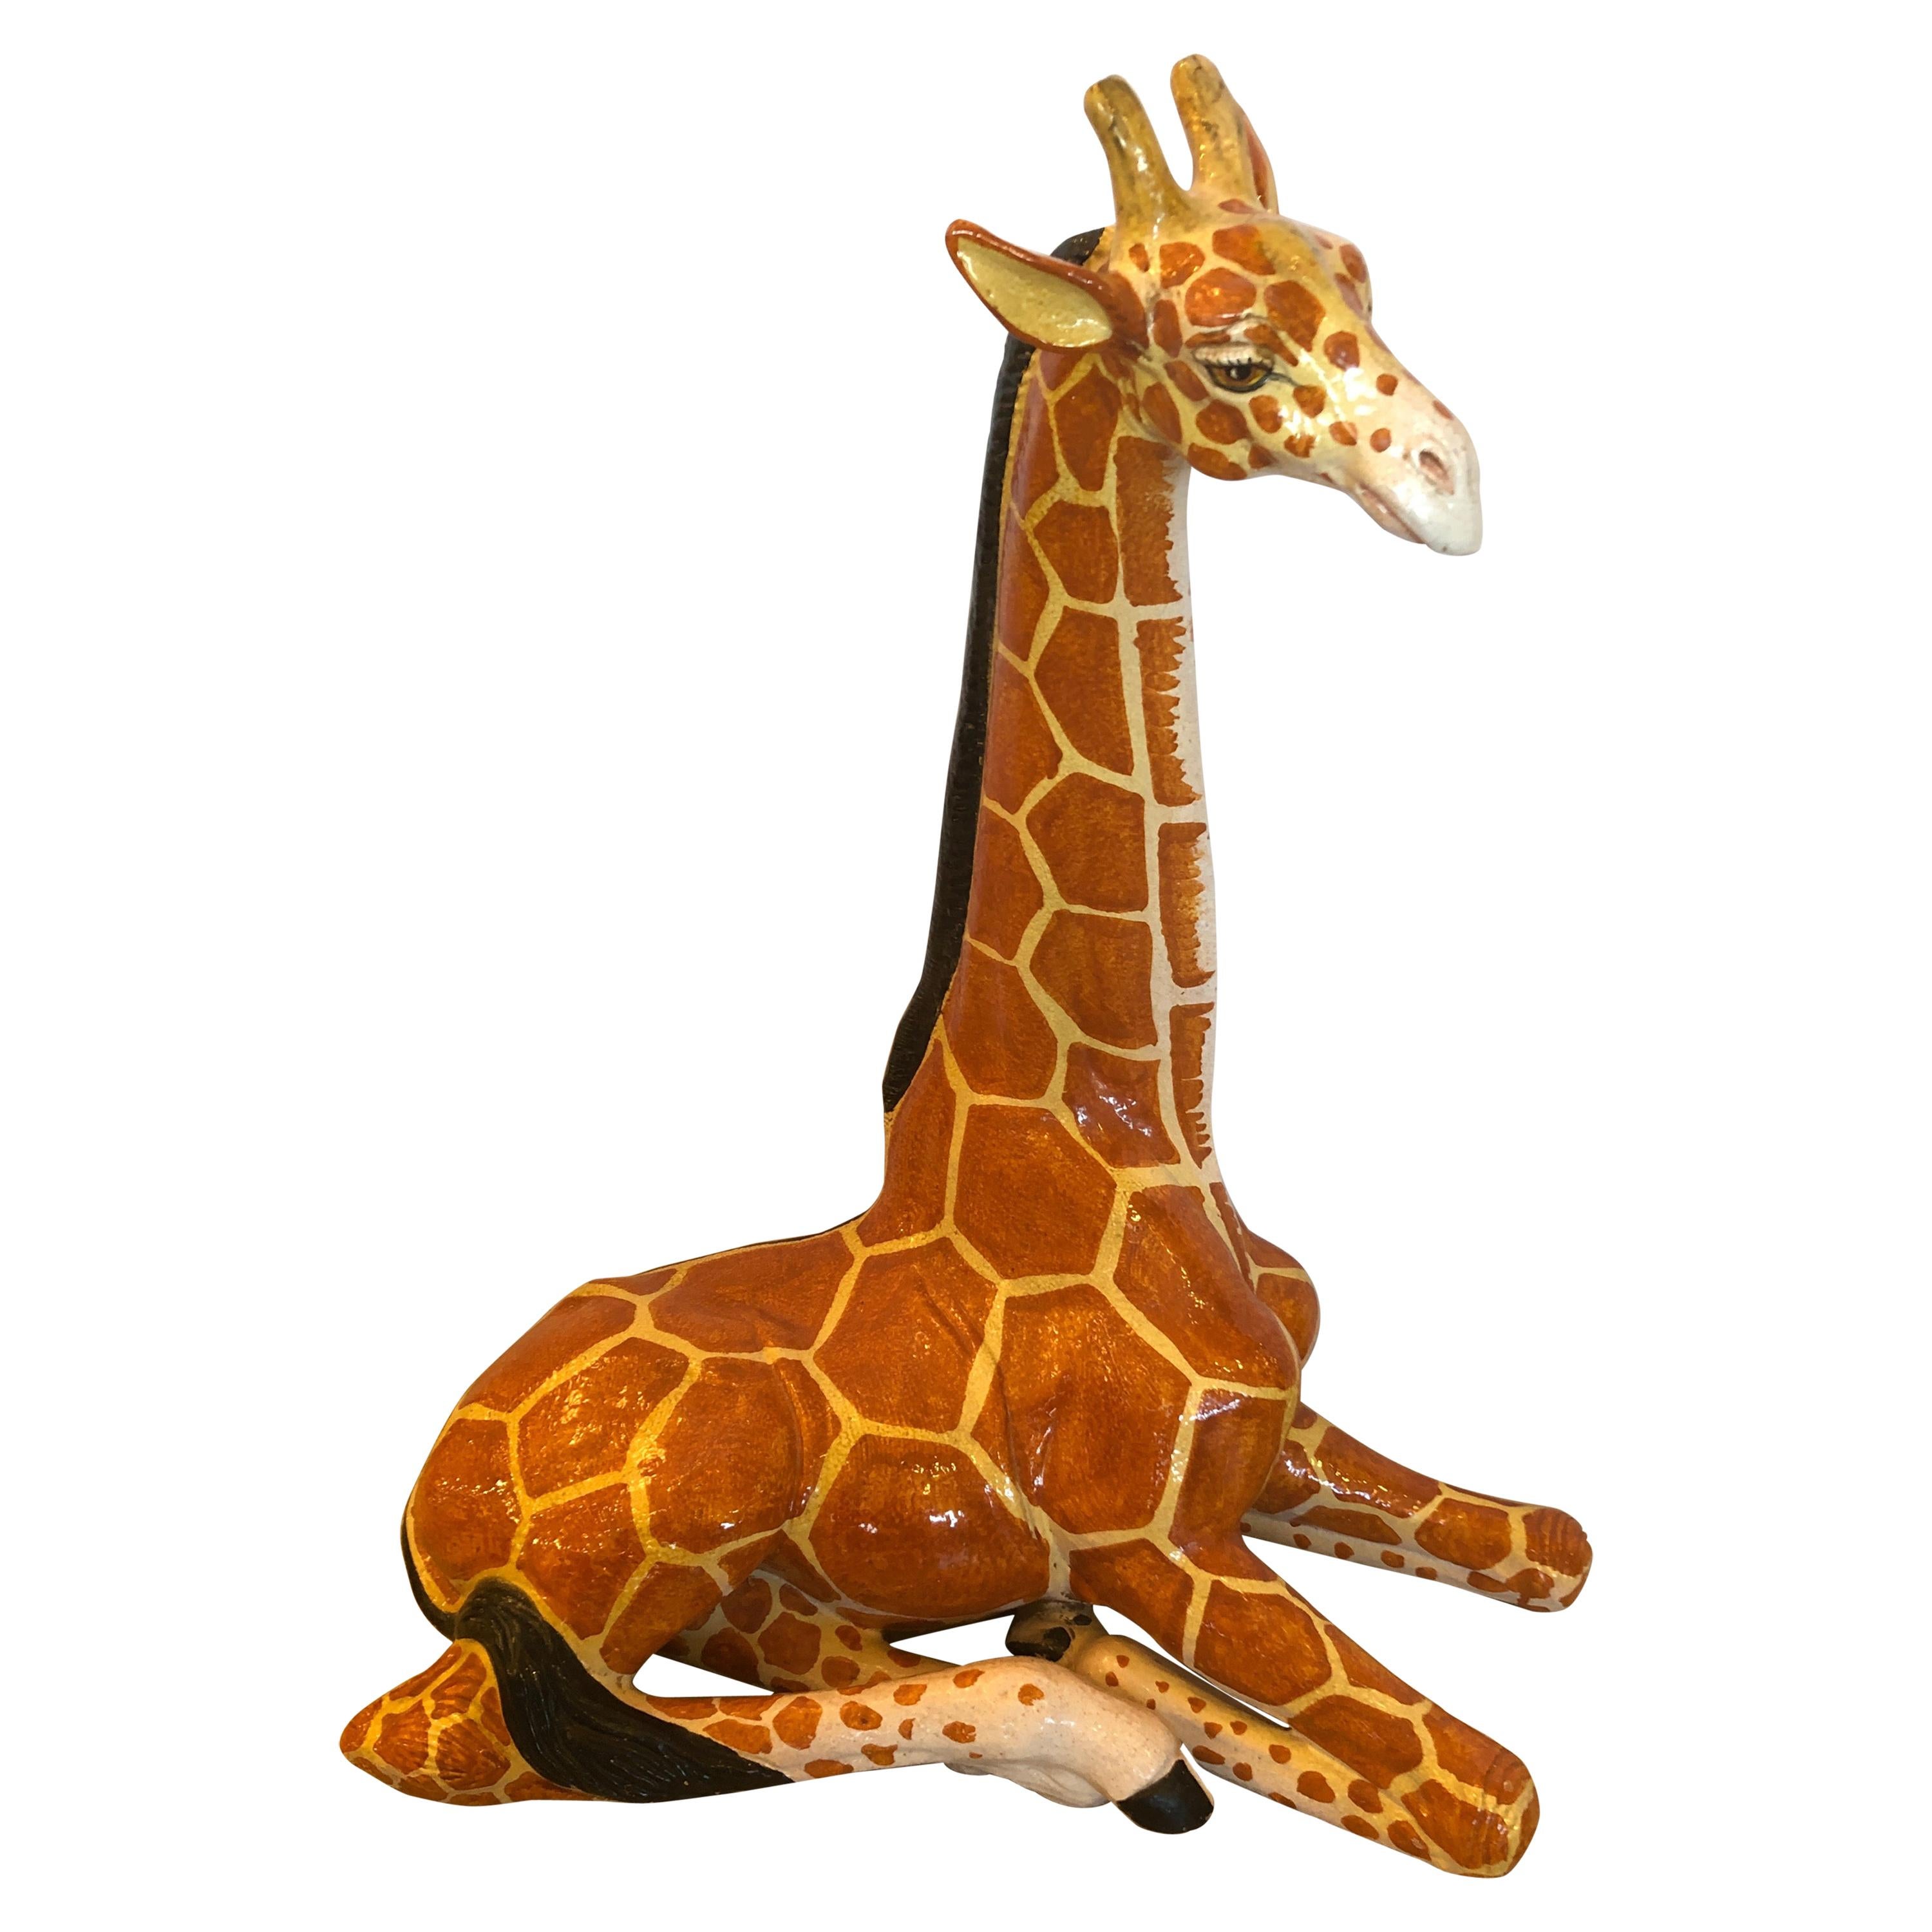 Fantastique grande sculpture italienne fantaisiste de girafe en terre cuite fabriquée à la main